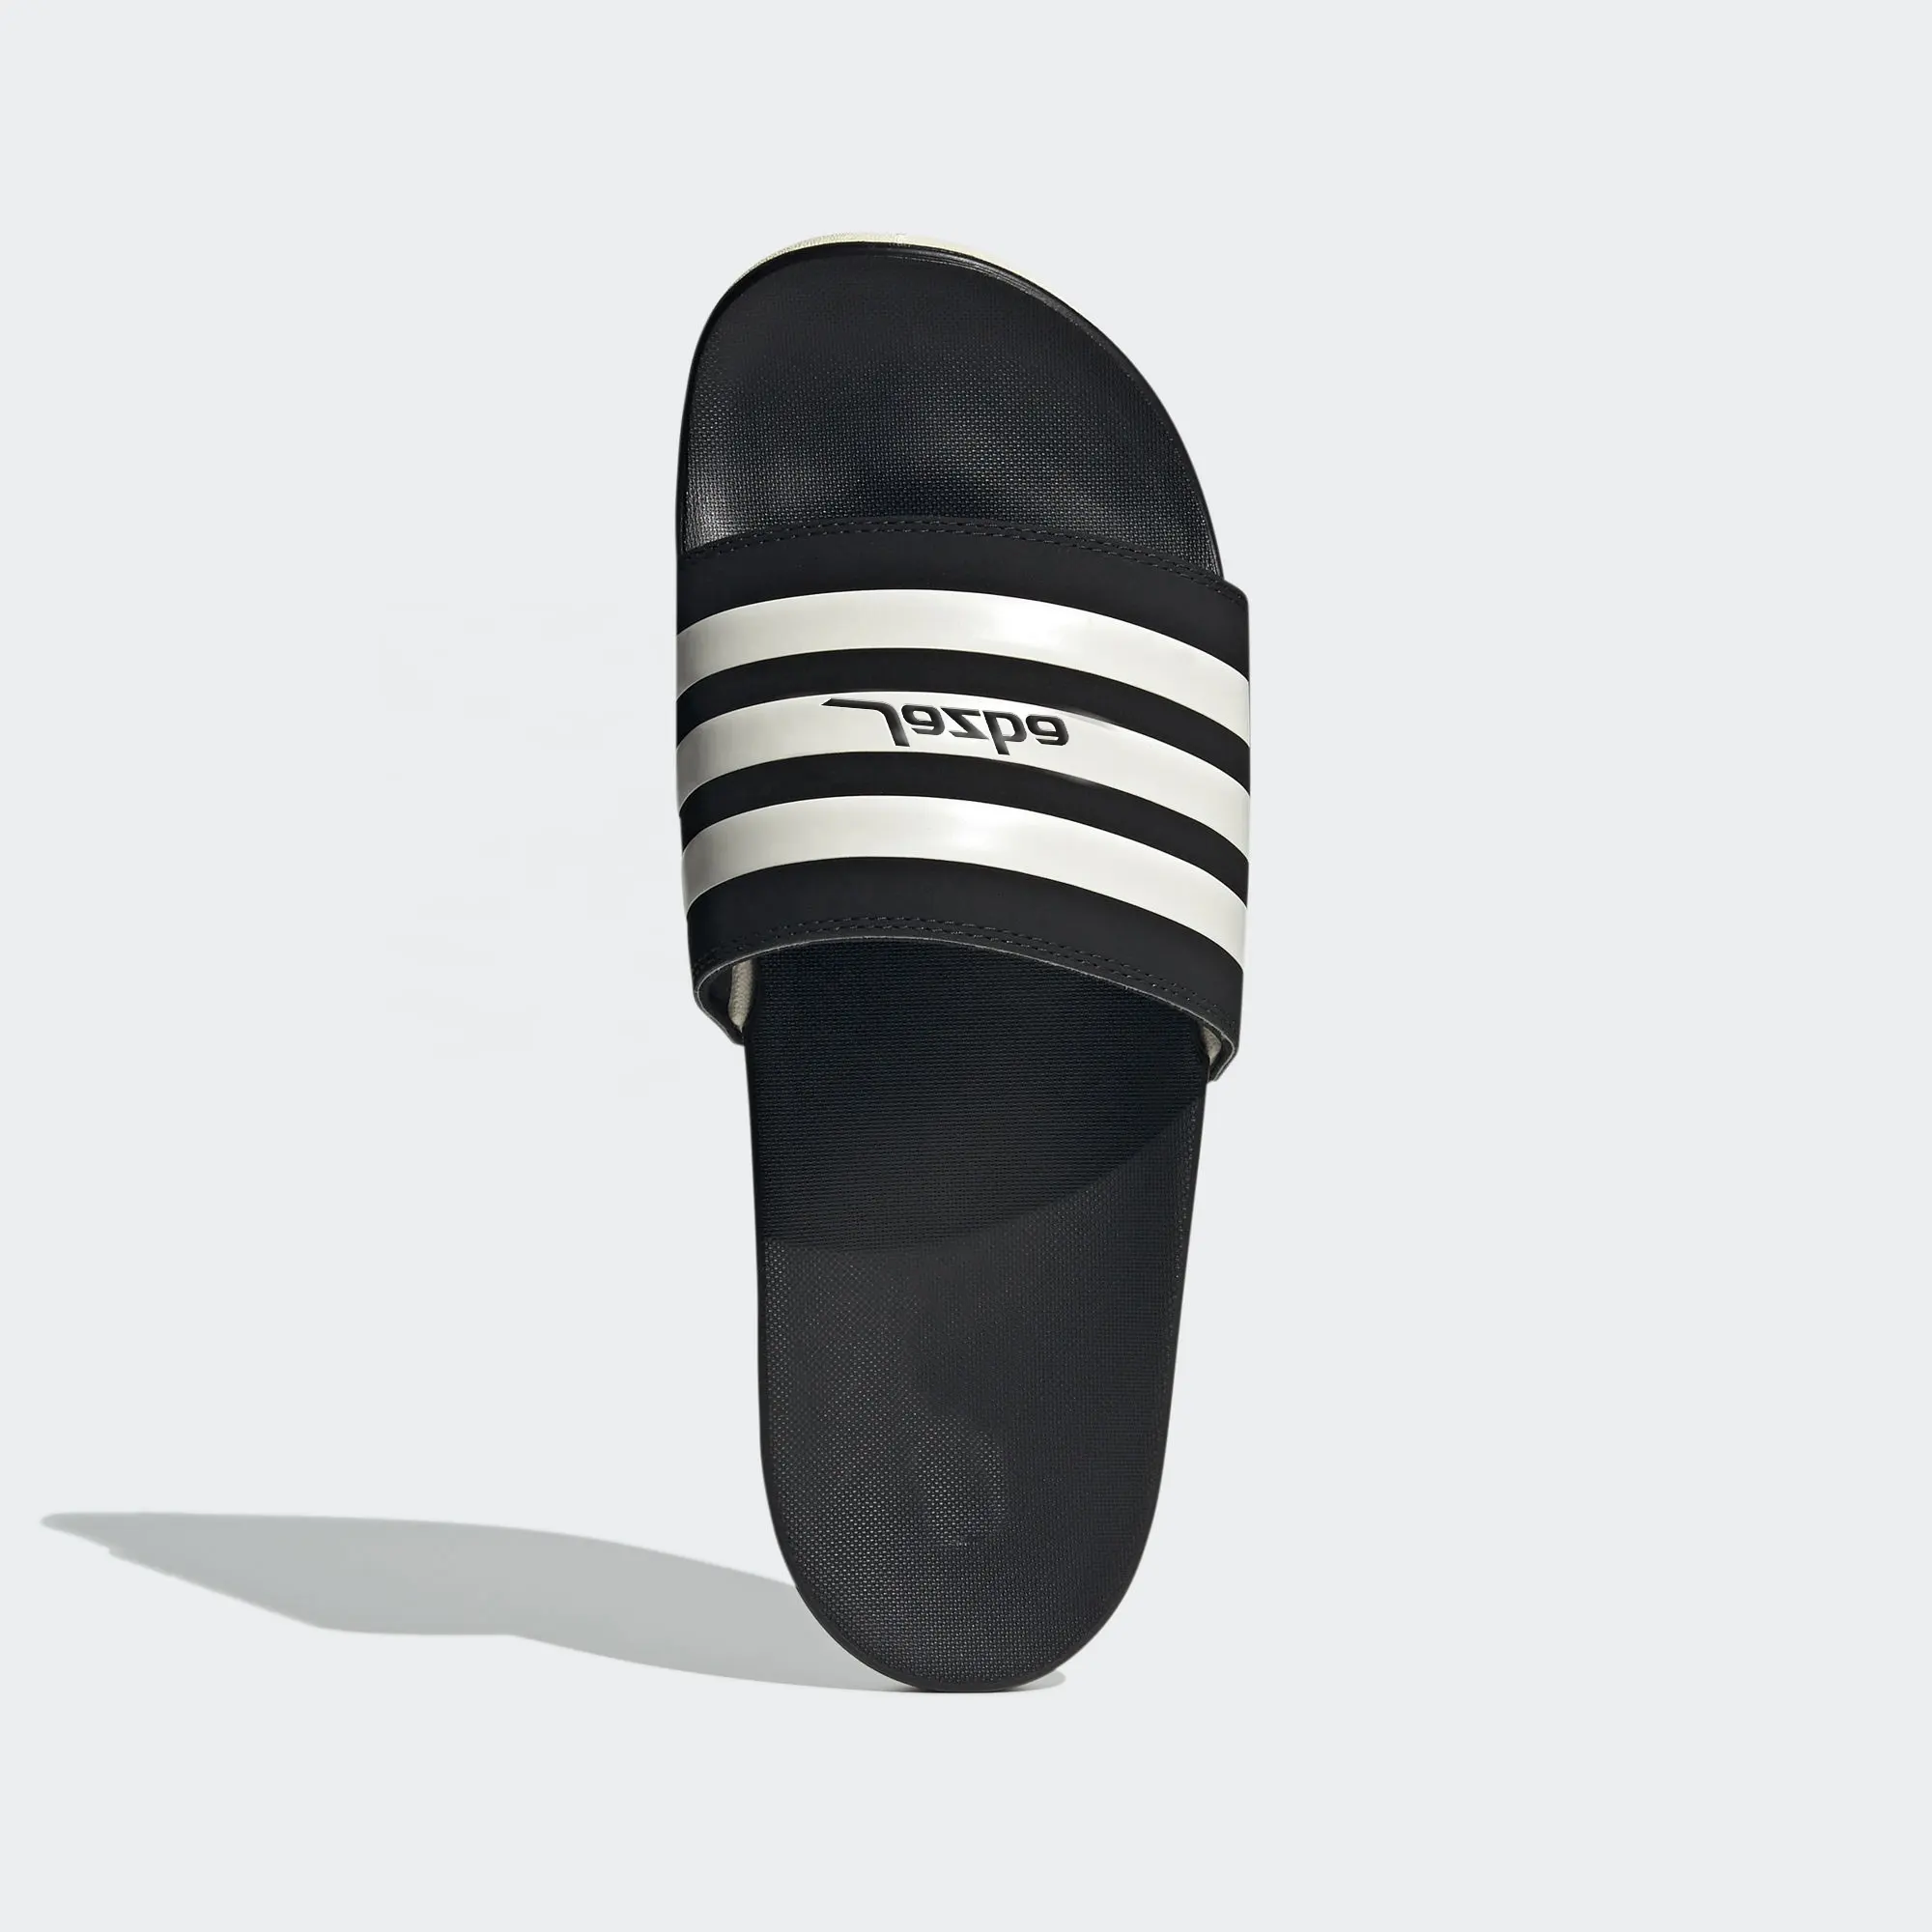 OEM/ODM SMD sandales pour hommes nouvelle vente à chaud pantoufles en caoutchouc de créateur vente en gros de matériel de chaussures